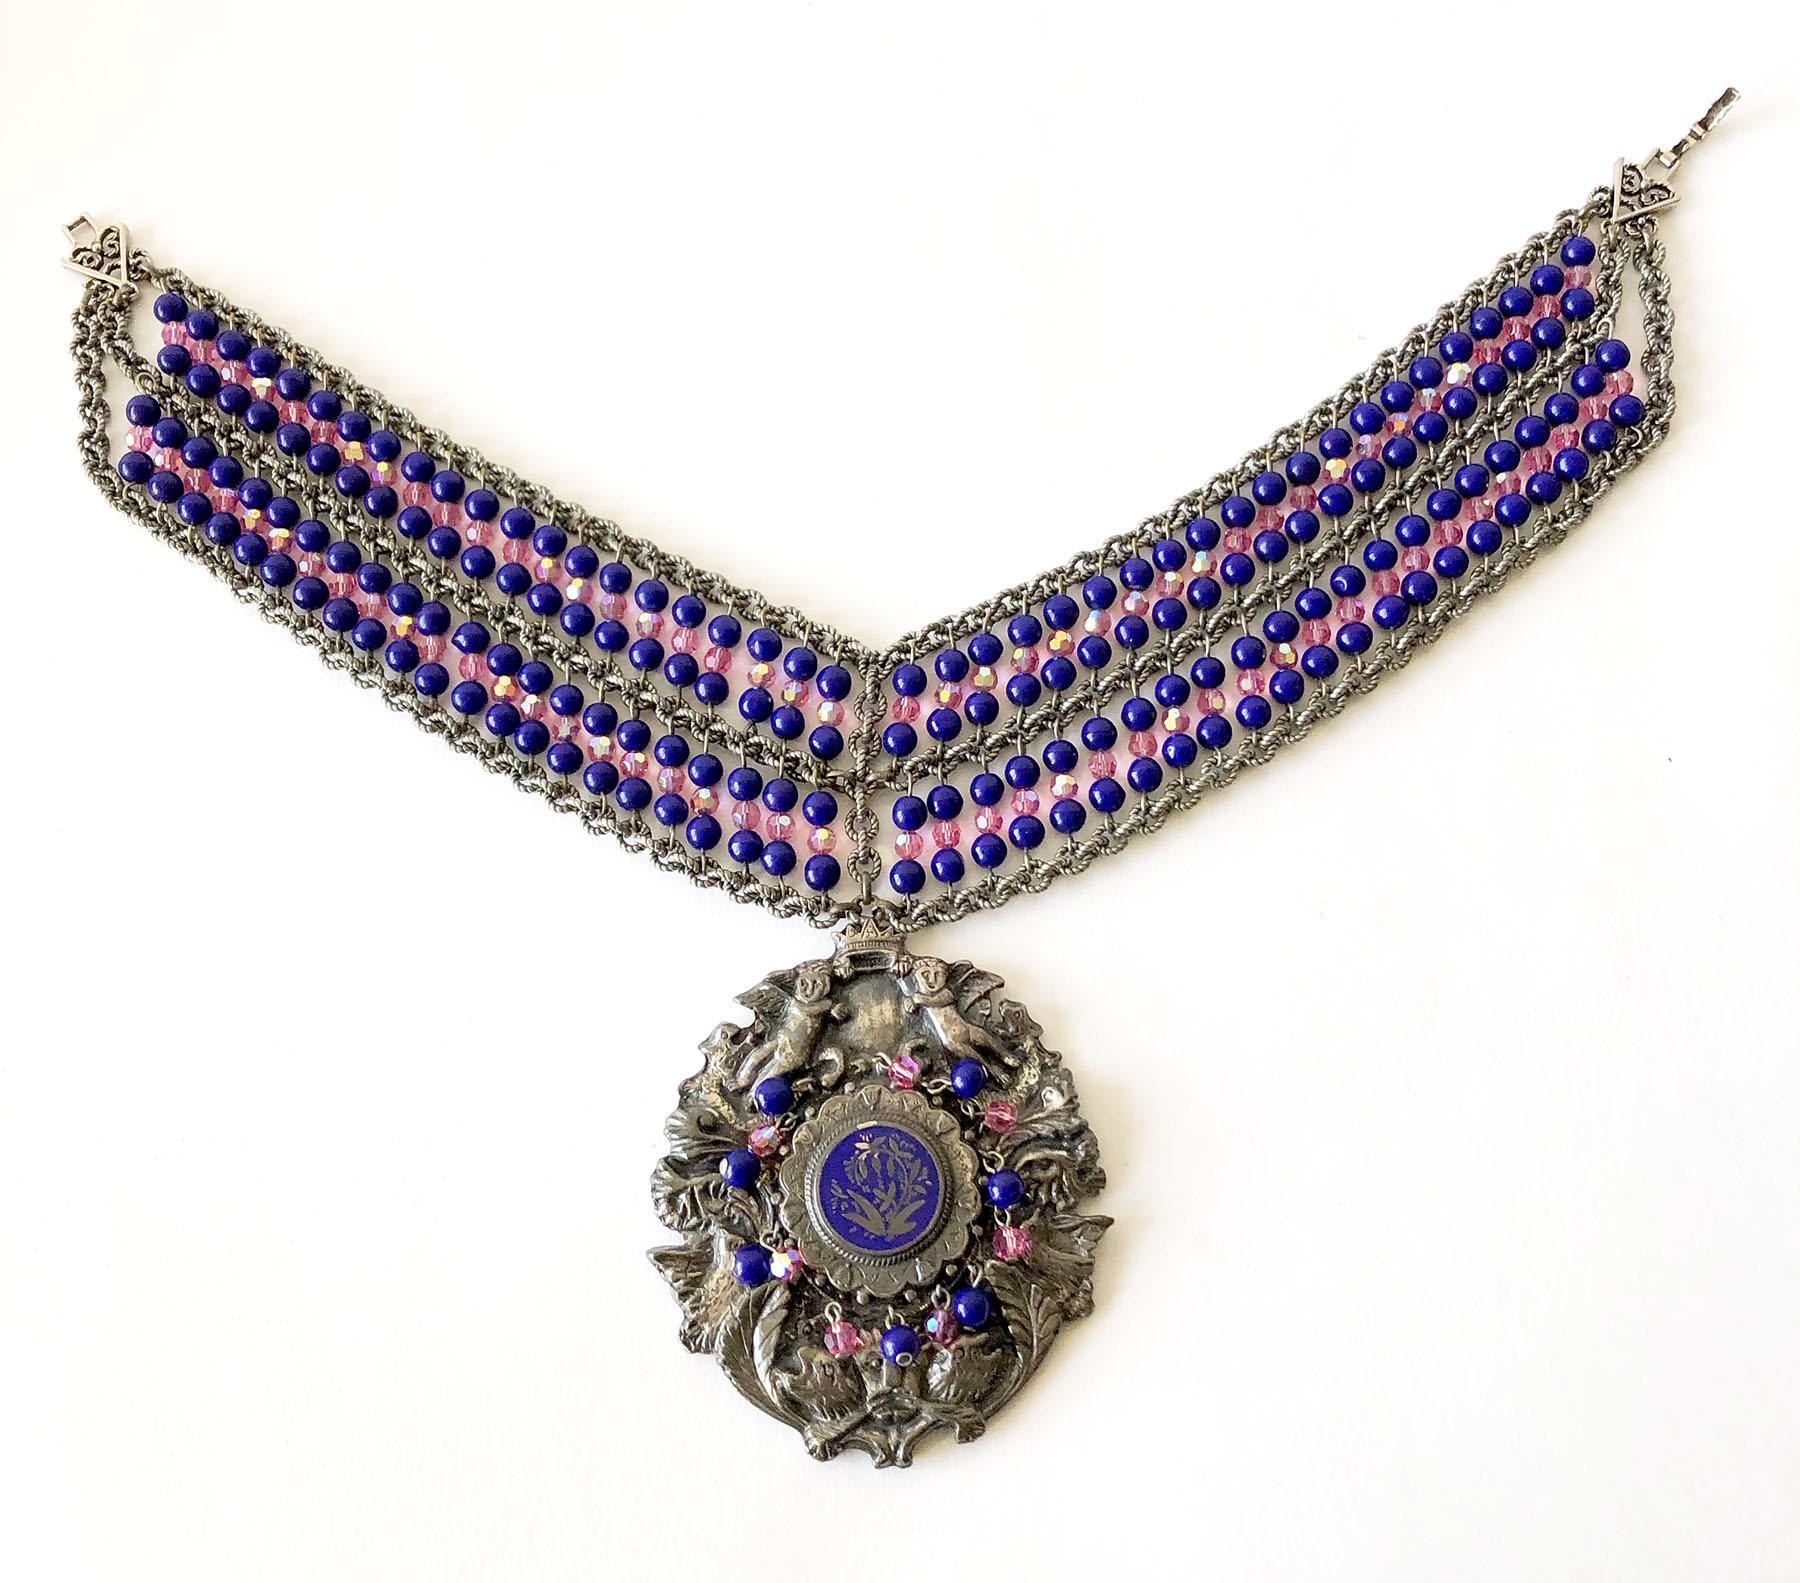 Handgefertigte, einzigartige Vintage-Halskette im Stil der 1980er Jahre mit einem großen, mit Glasperlen verzierten Medaillon, entworfen und hergestellt von Mark Merrill aus Detroit, Michigan.  Halskette Teil Maßnahmen 14 